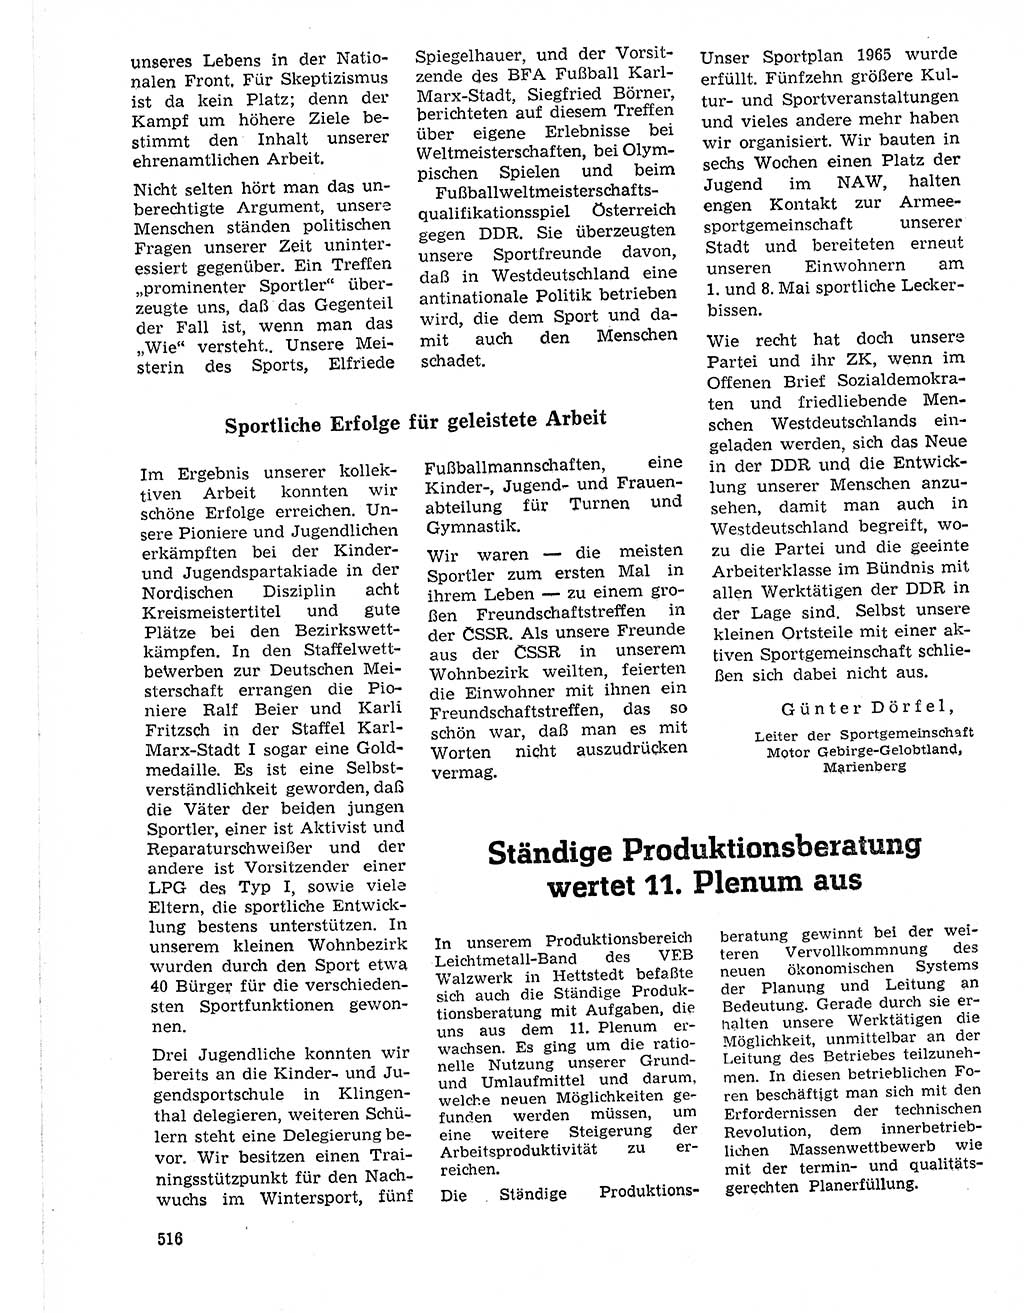 Neuer Weg (NW), Organ des Zentralkomitees (ZK) der SED (Sozialistische Einheitspartei Deutschlands) für Fragen des Parteilebens, 21. Jahrgang [Deutsche Demokratische Republik (DDR)] 1966, Seite 516 (NW ZK SED DDR 1966, S. 516)